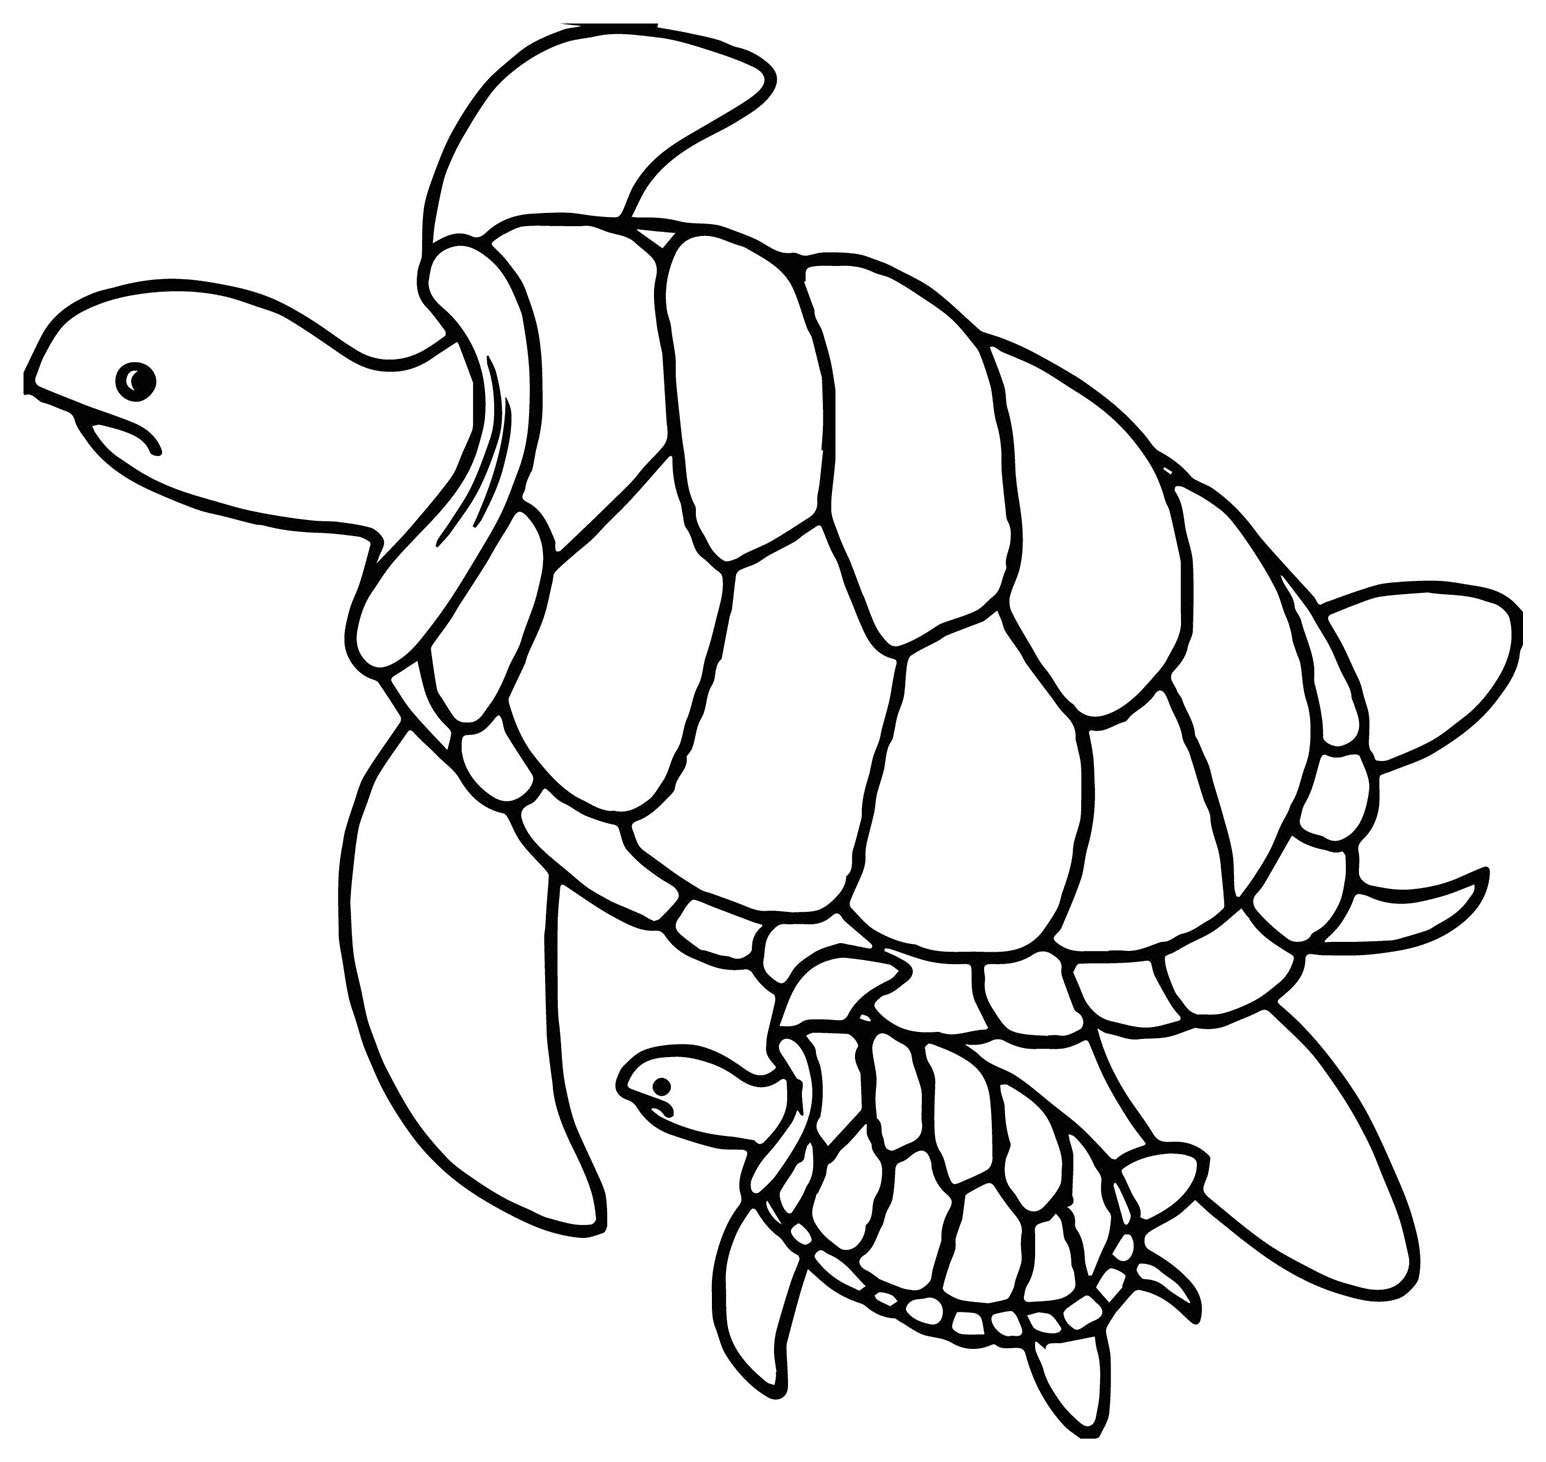 Desenho de tartaruga para imprimir e colorir